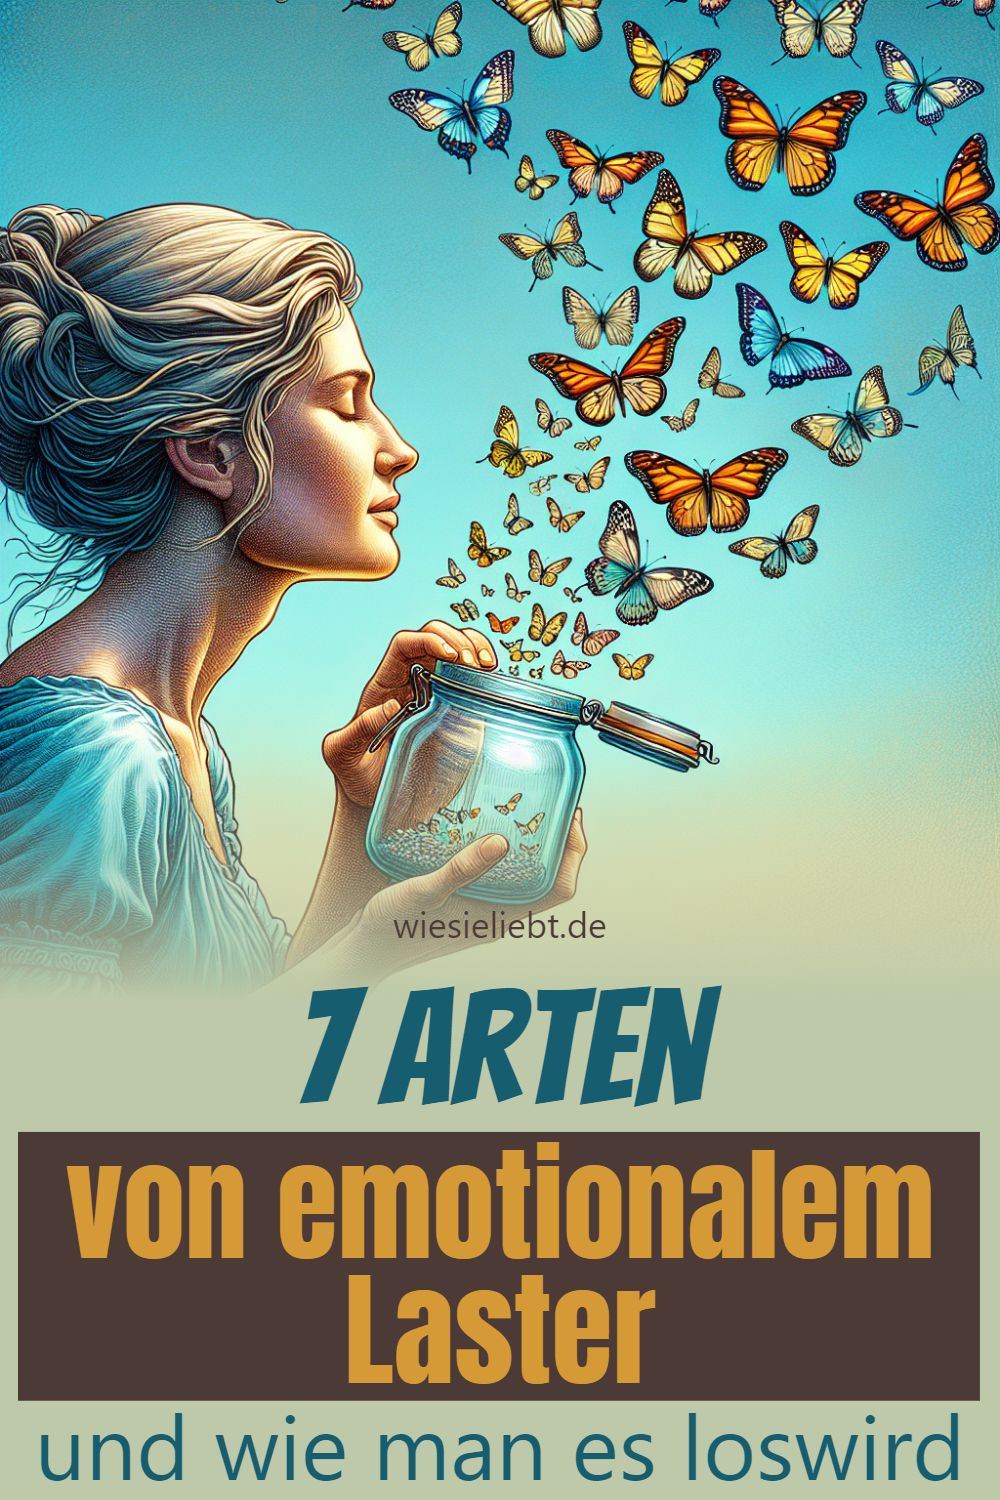 7 Arten von emotionalem Laster und wie man es loswird